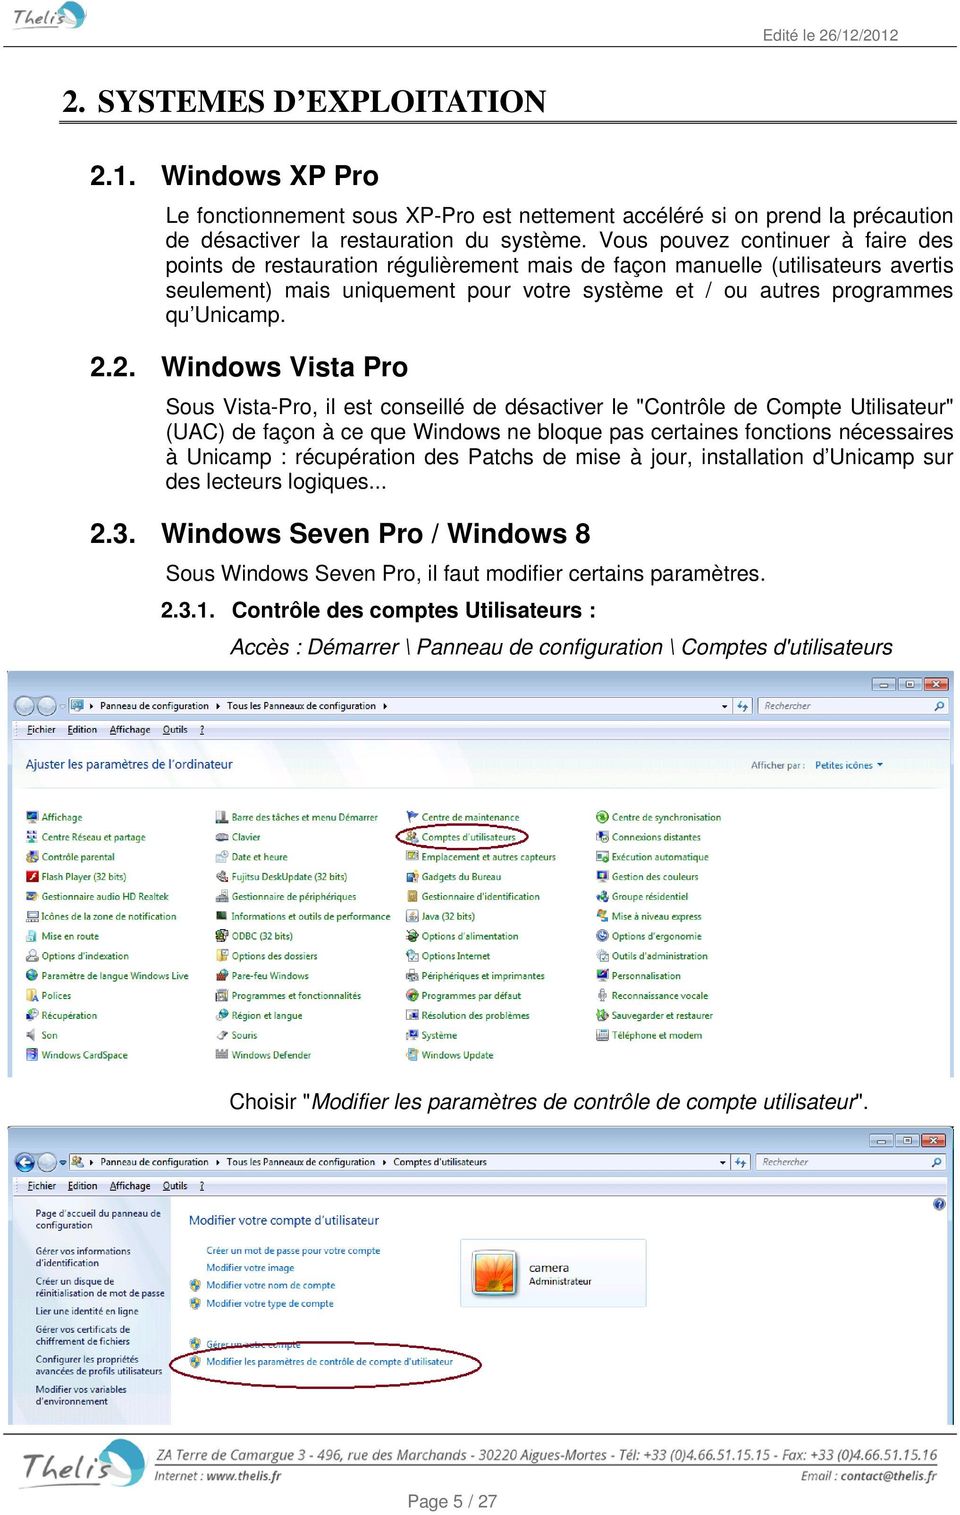 2.2. Windows Vista Pro Sous Vista-Pro, il est conseillé de désactiver le "Contrôle de Compte Utilisateur" (UAC) de façon à ce que Windows ne bloque pas certaines fonctions nécessaires à Unicamp :